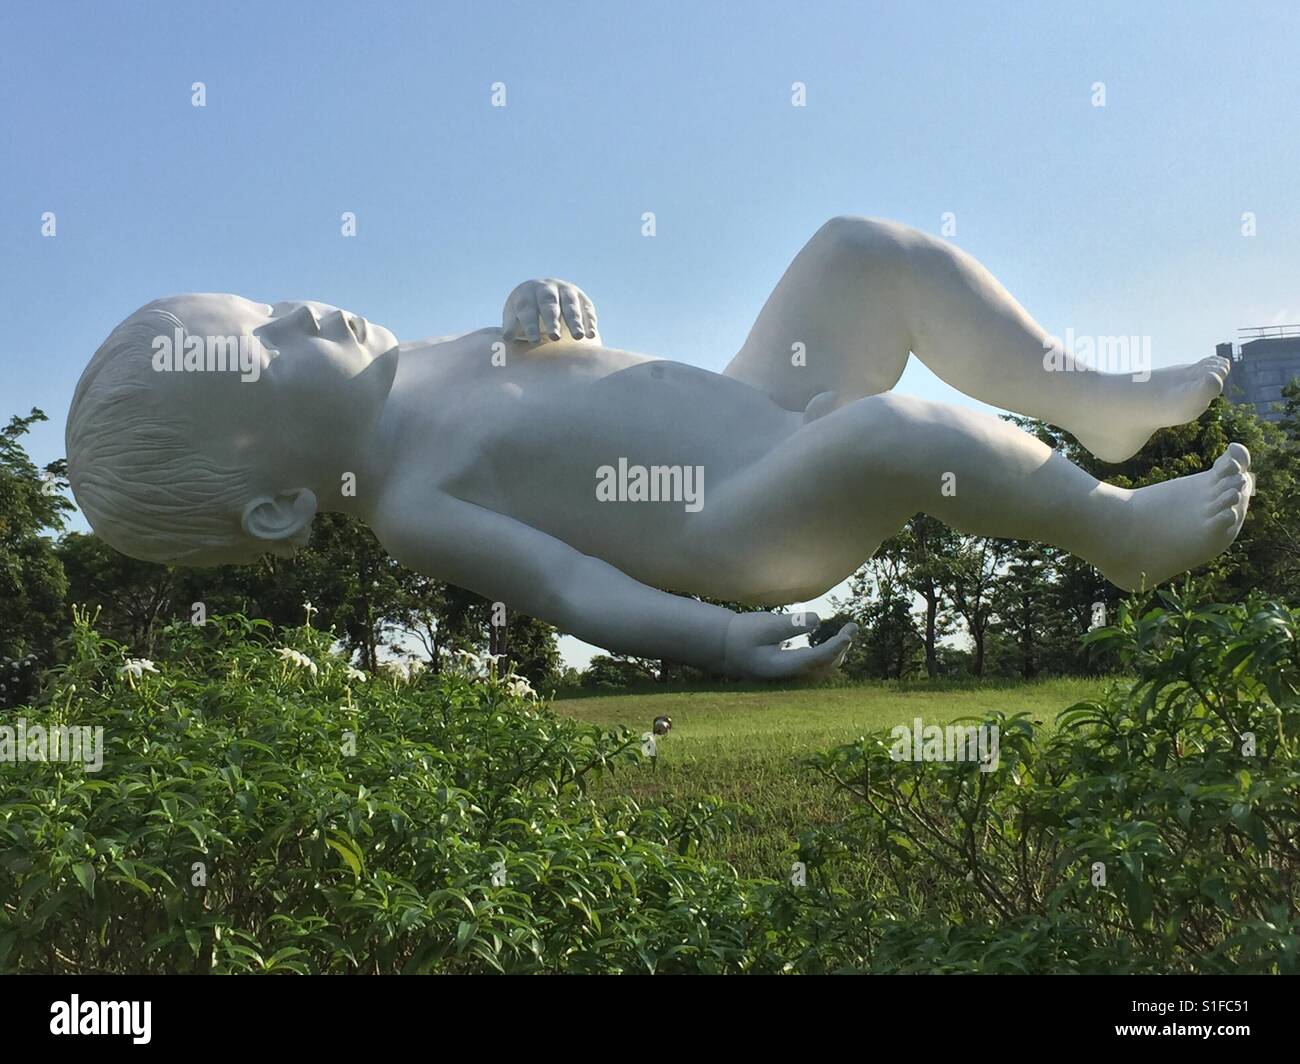 Une sculpture en bronze laqué blanc 'Planet' par sculpture artiste Marc Quinn (Royaume-Uni) au Gardens by the Bay, Singapour Banque D'Images